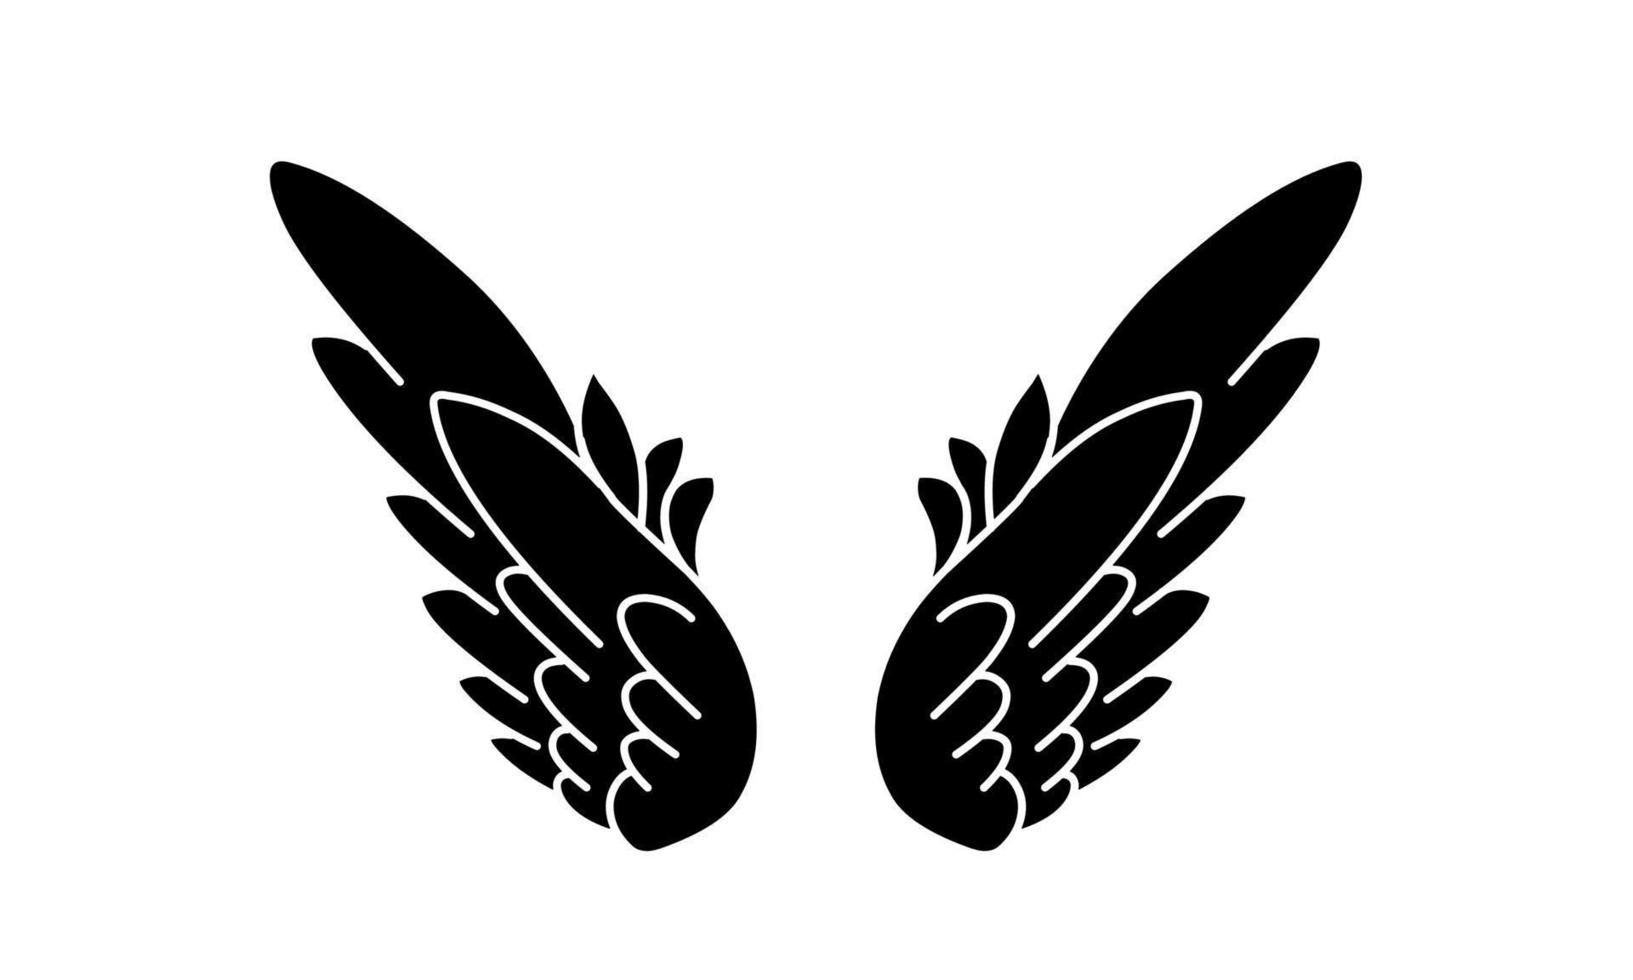 tatuagem de asas de anjo vetor livre